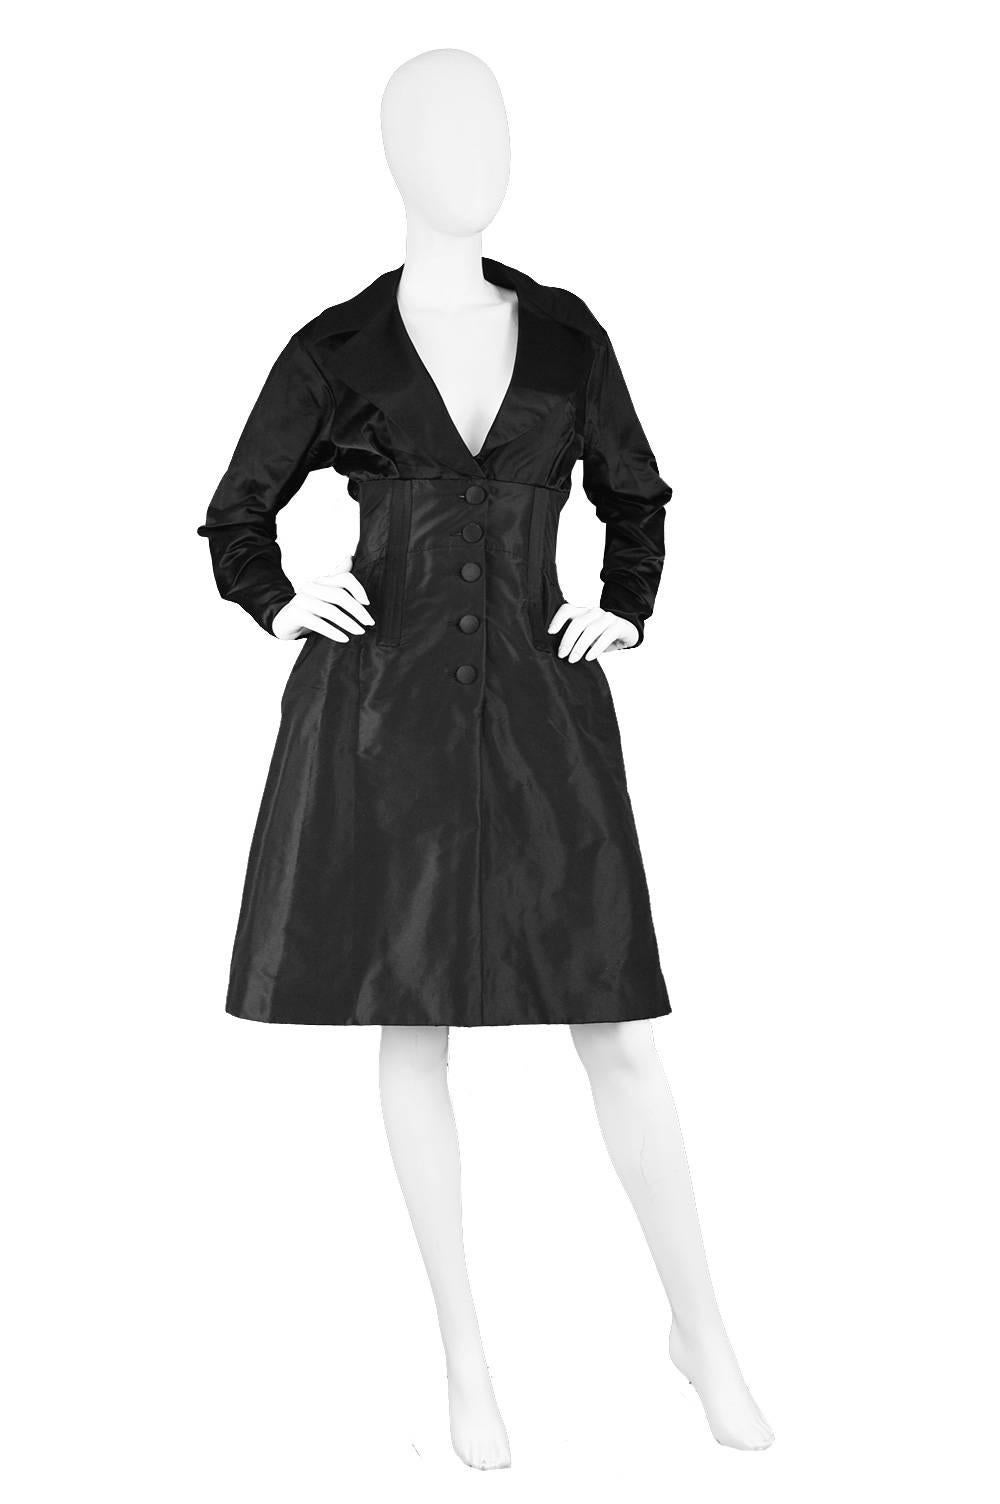 Christian Lacroix Vintage Black Duchesse Satin & Taffeta Boned Dress, 1990s

Estimated Size: UK 8/ US 4/ EU 36. Please check measurements.
Bust - 32” / 81cm
Waist - 26” / 66cm
Hips - 40” / 101cm
Length (Shoulder to Hem) - 38” / 96cm
Shoulder to